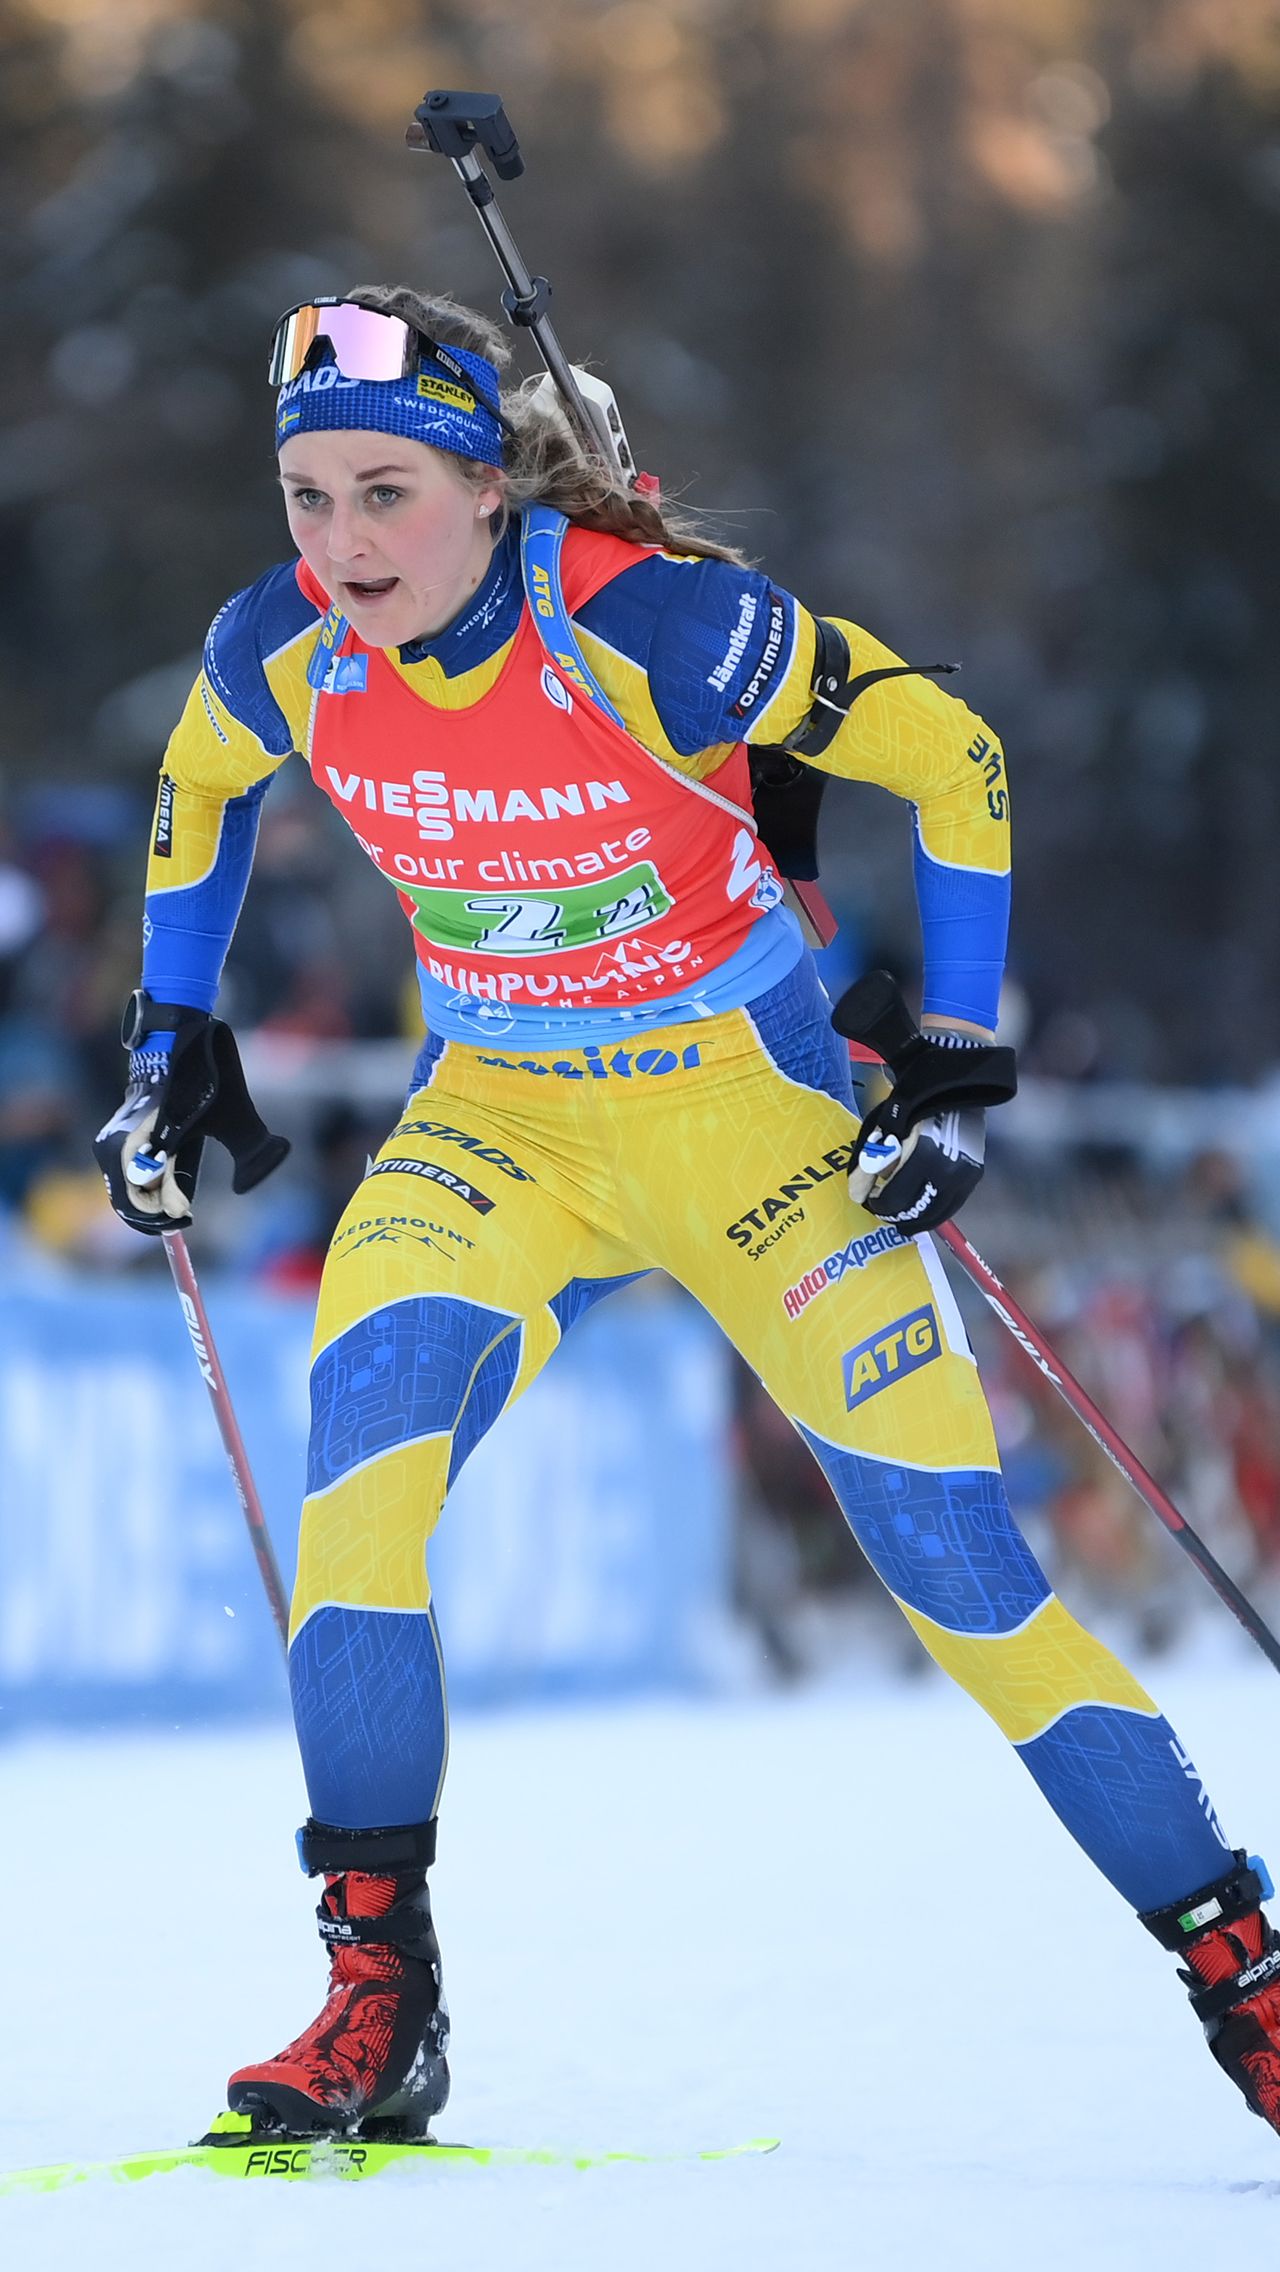 Шведская биатлонистка и призёр Кубка мира Стина Нильссон также до 27 лет выступала в лыжных гонках, где выиграла пять олимпийских медалей, в том числе золото Пхёнчхана-2018.